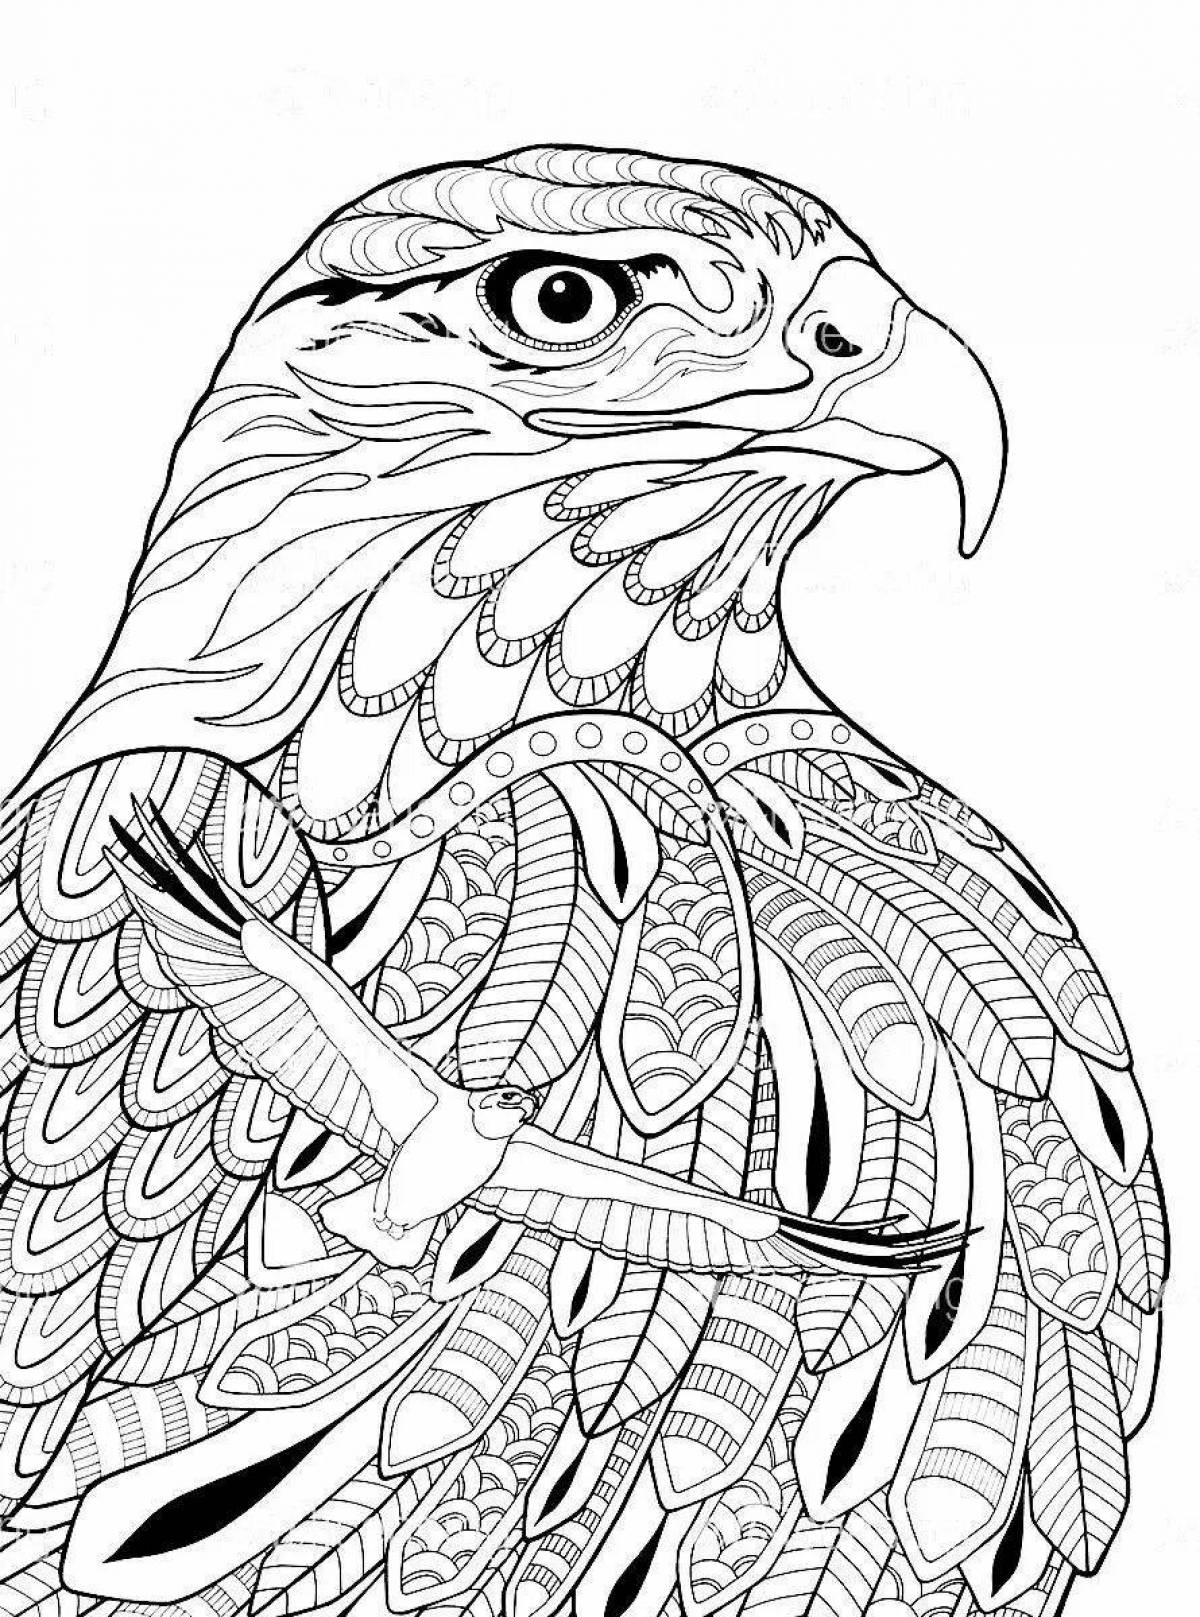 Превосходная раскраска антистрессовый орел